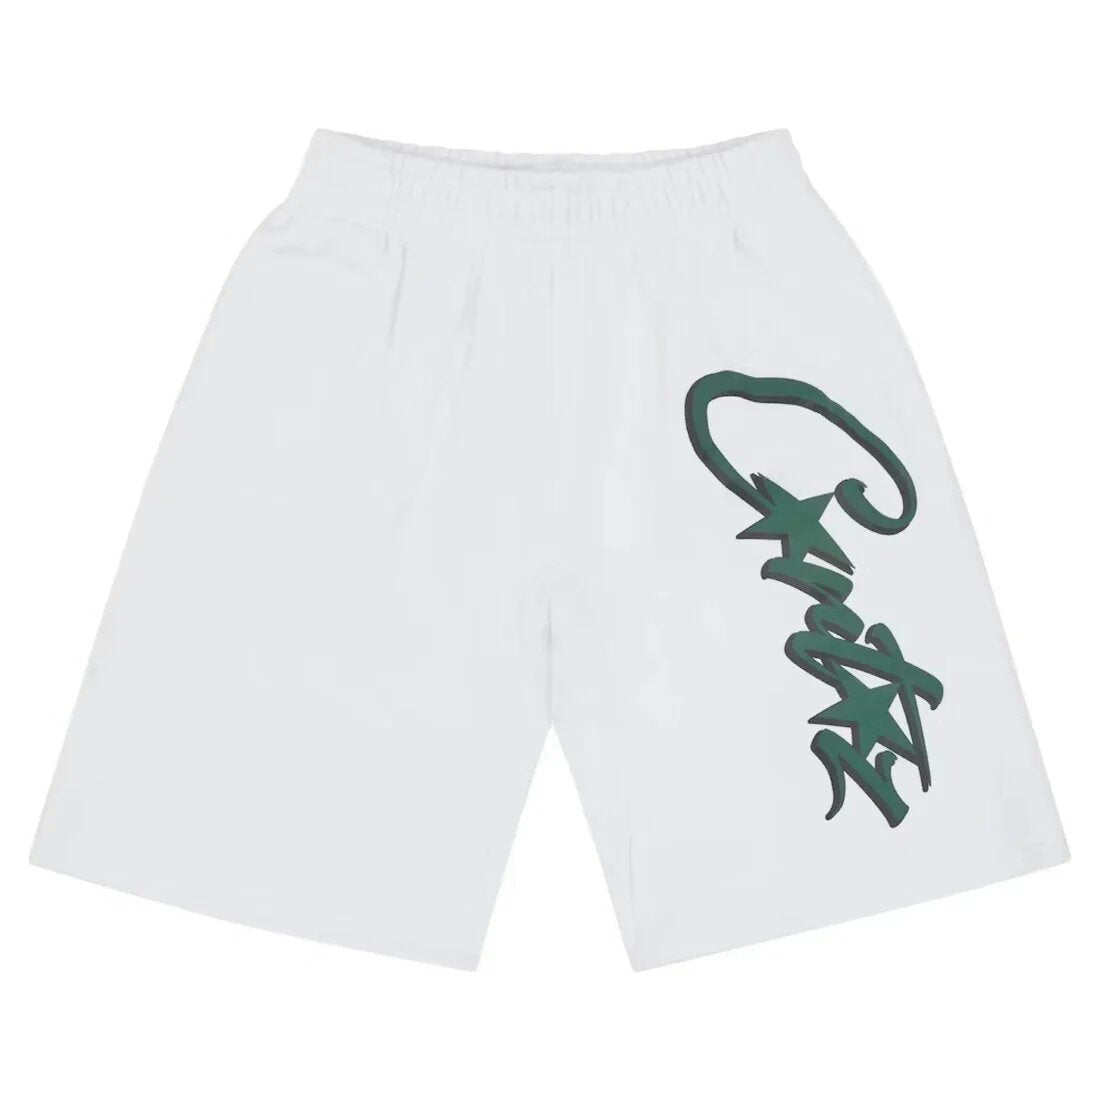 Corteiz Shorts White Forest Green Logo